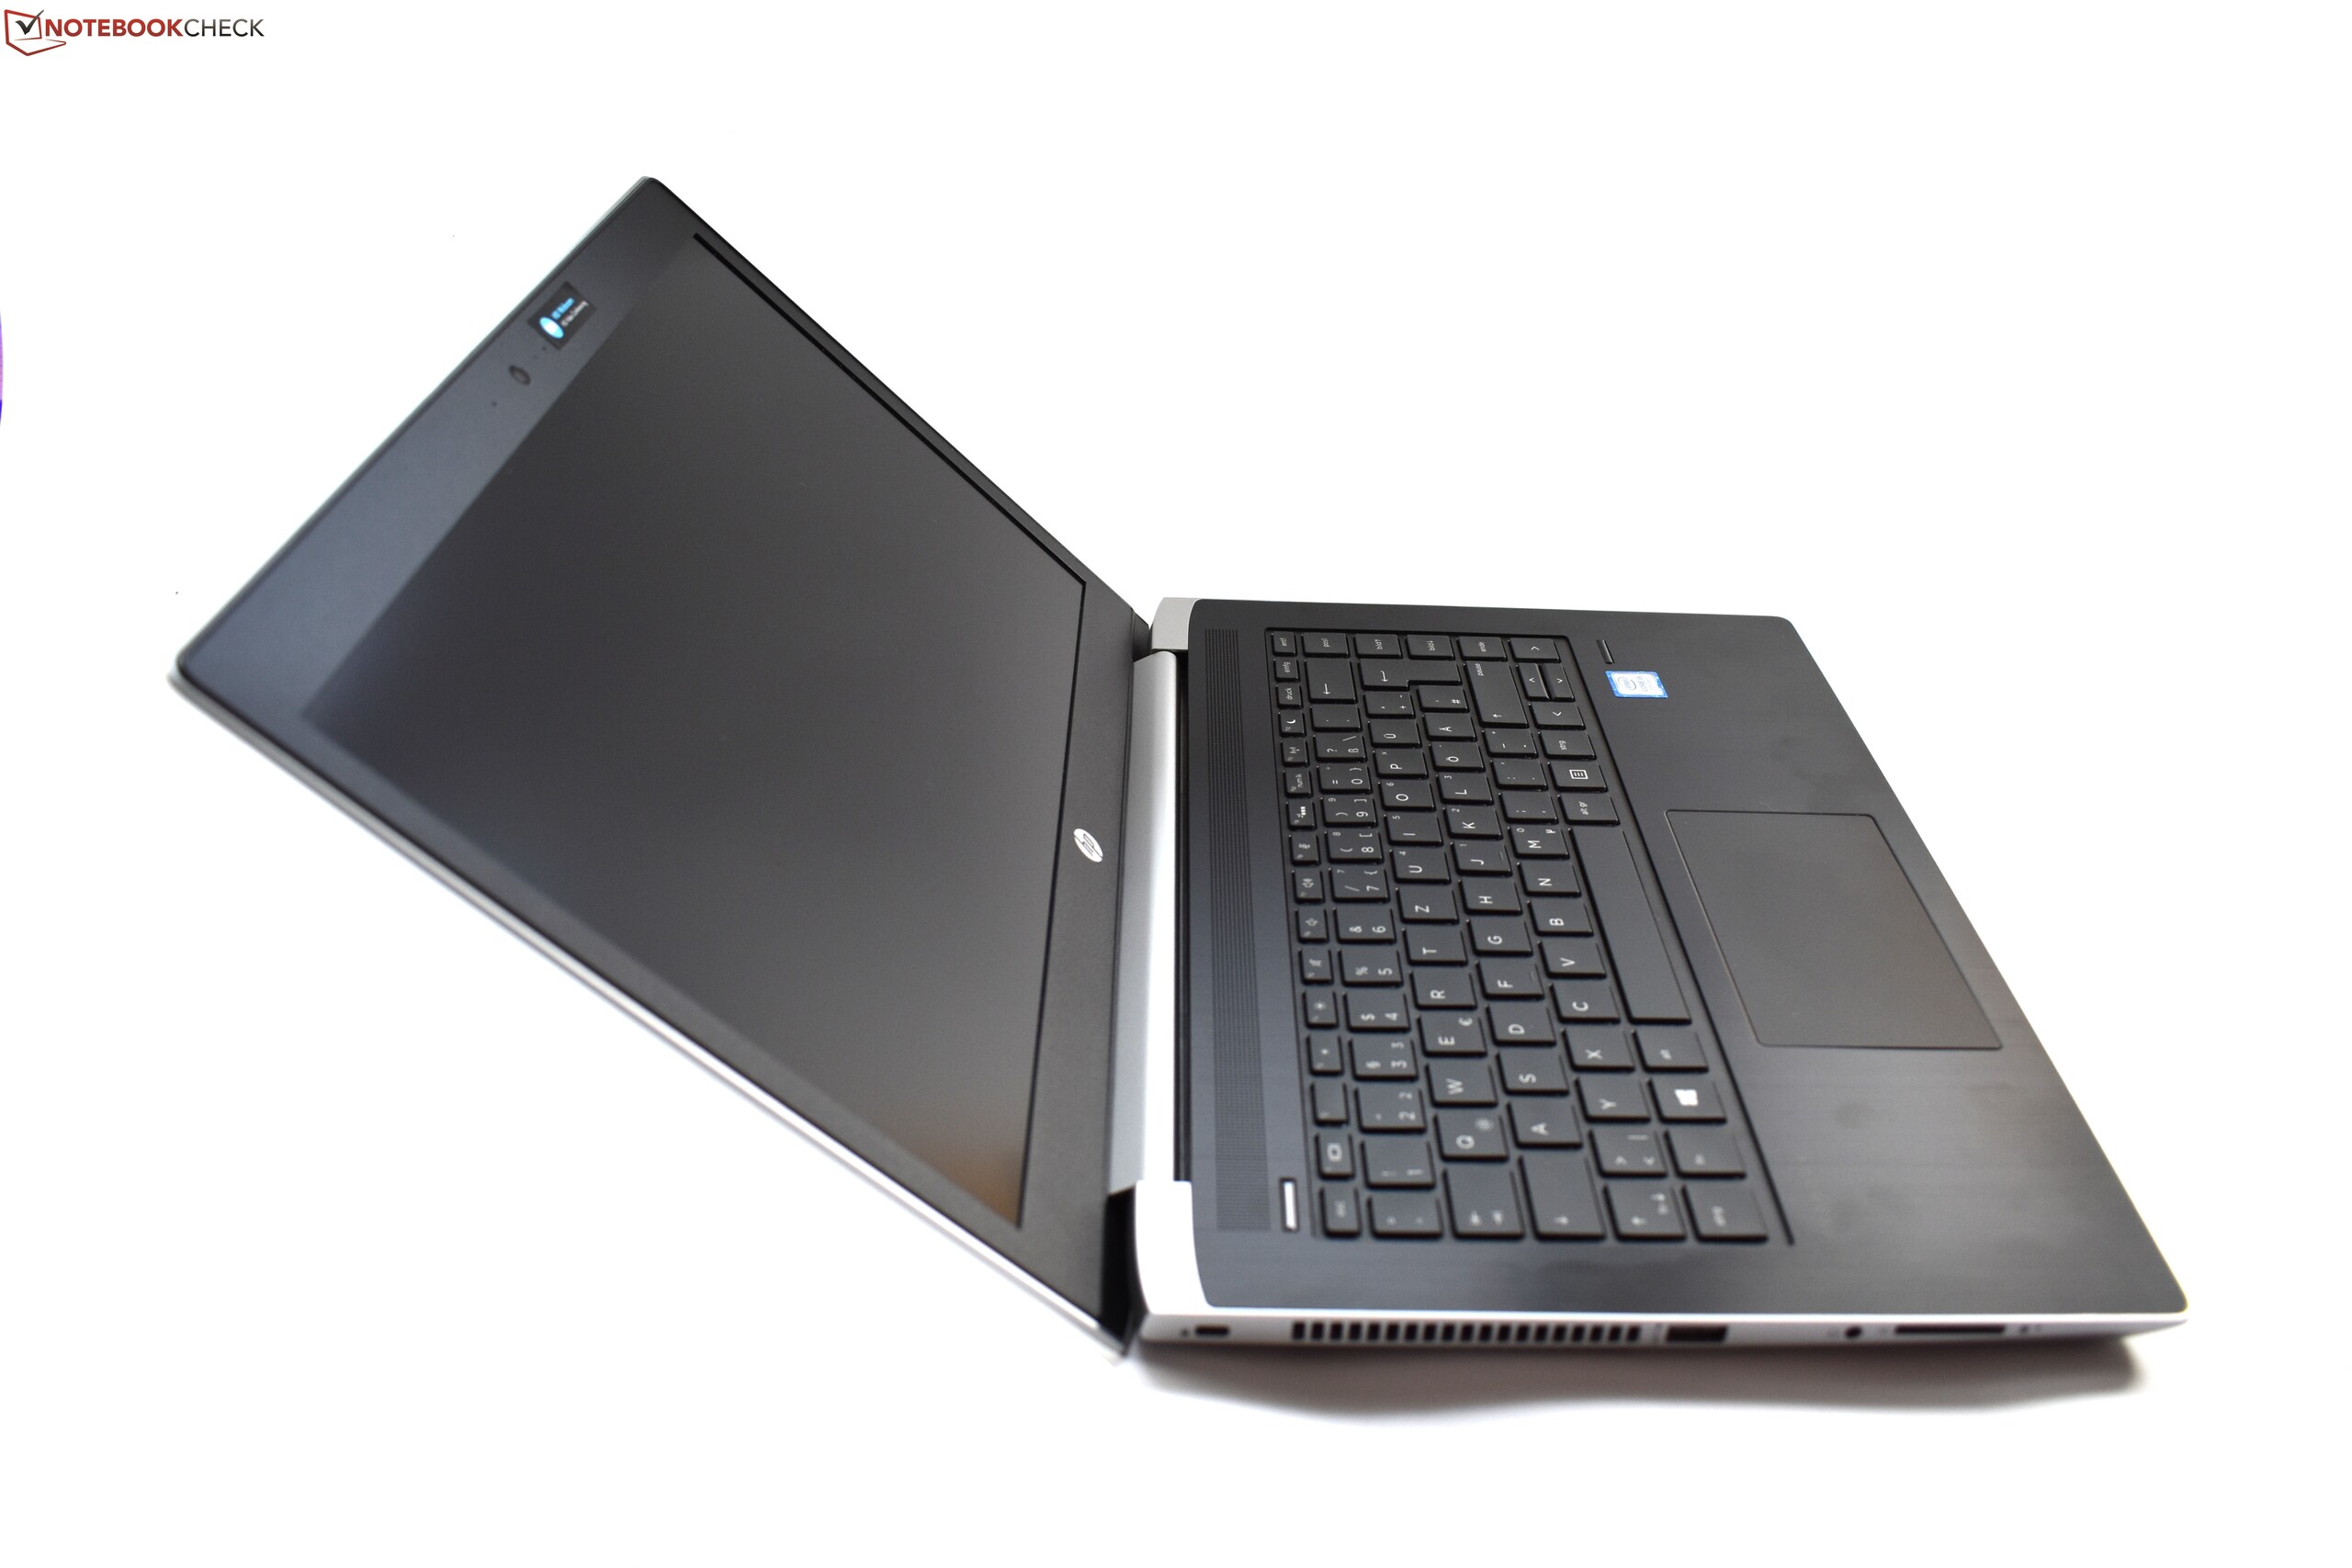 HP ProBook 440 G5 (i5-8250U, FHD) Laptop Review - NotebookCheck 